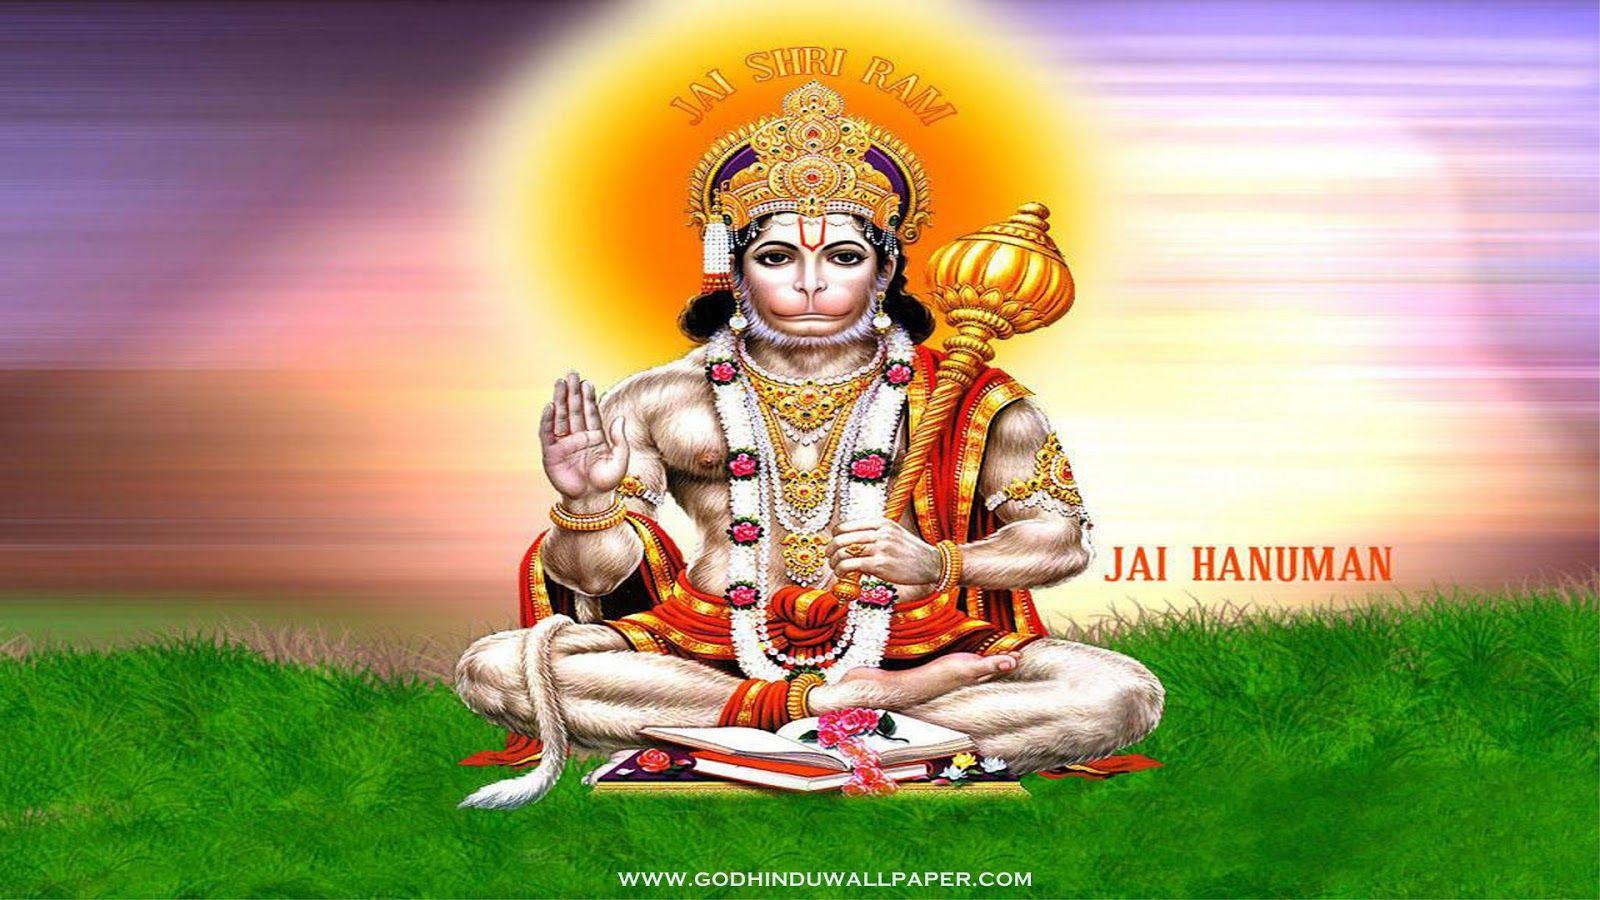 3D god wallpaper of hindu gods. Free HD Wallpaper Download